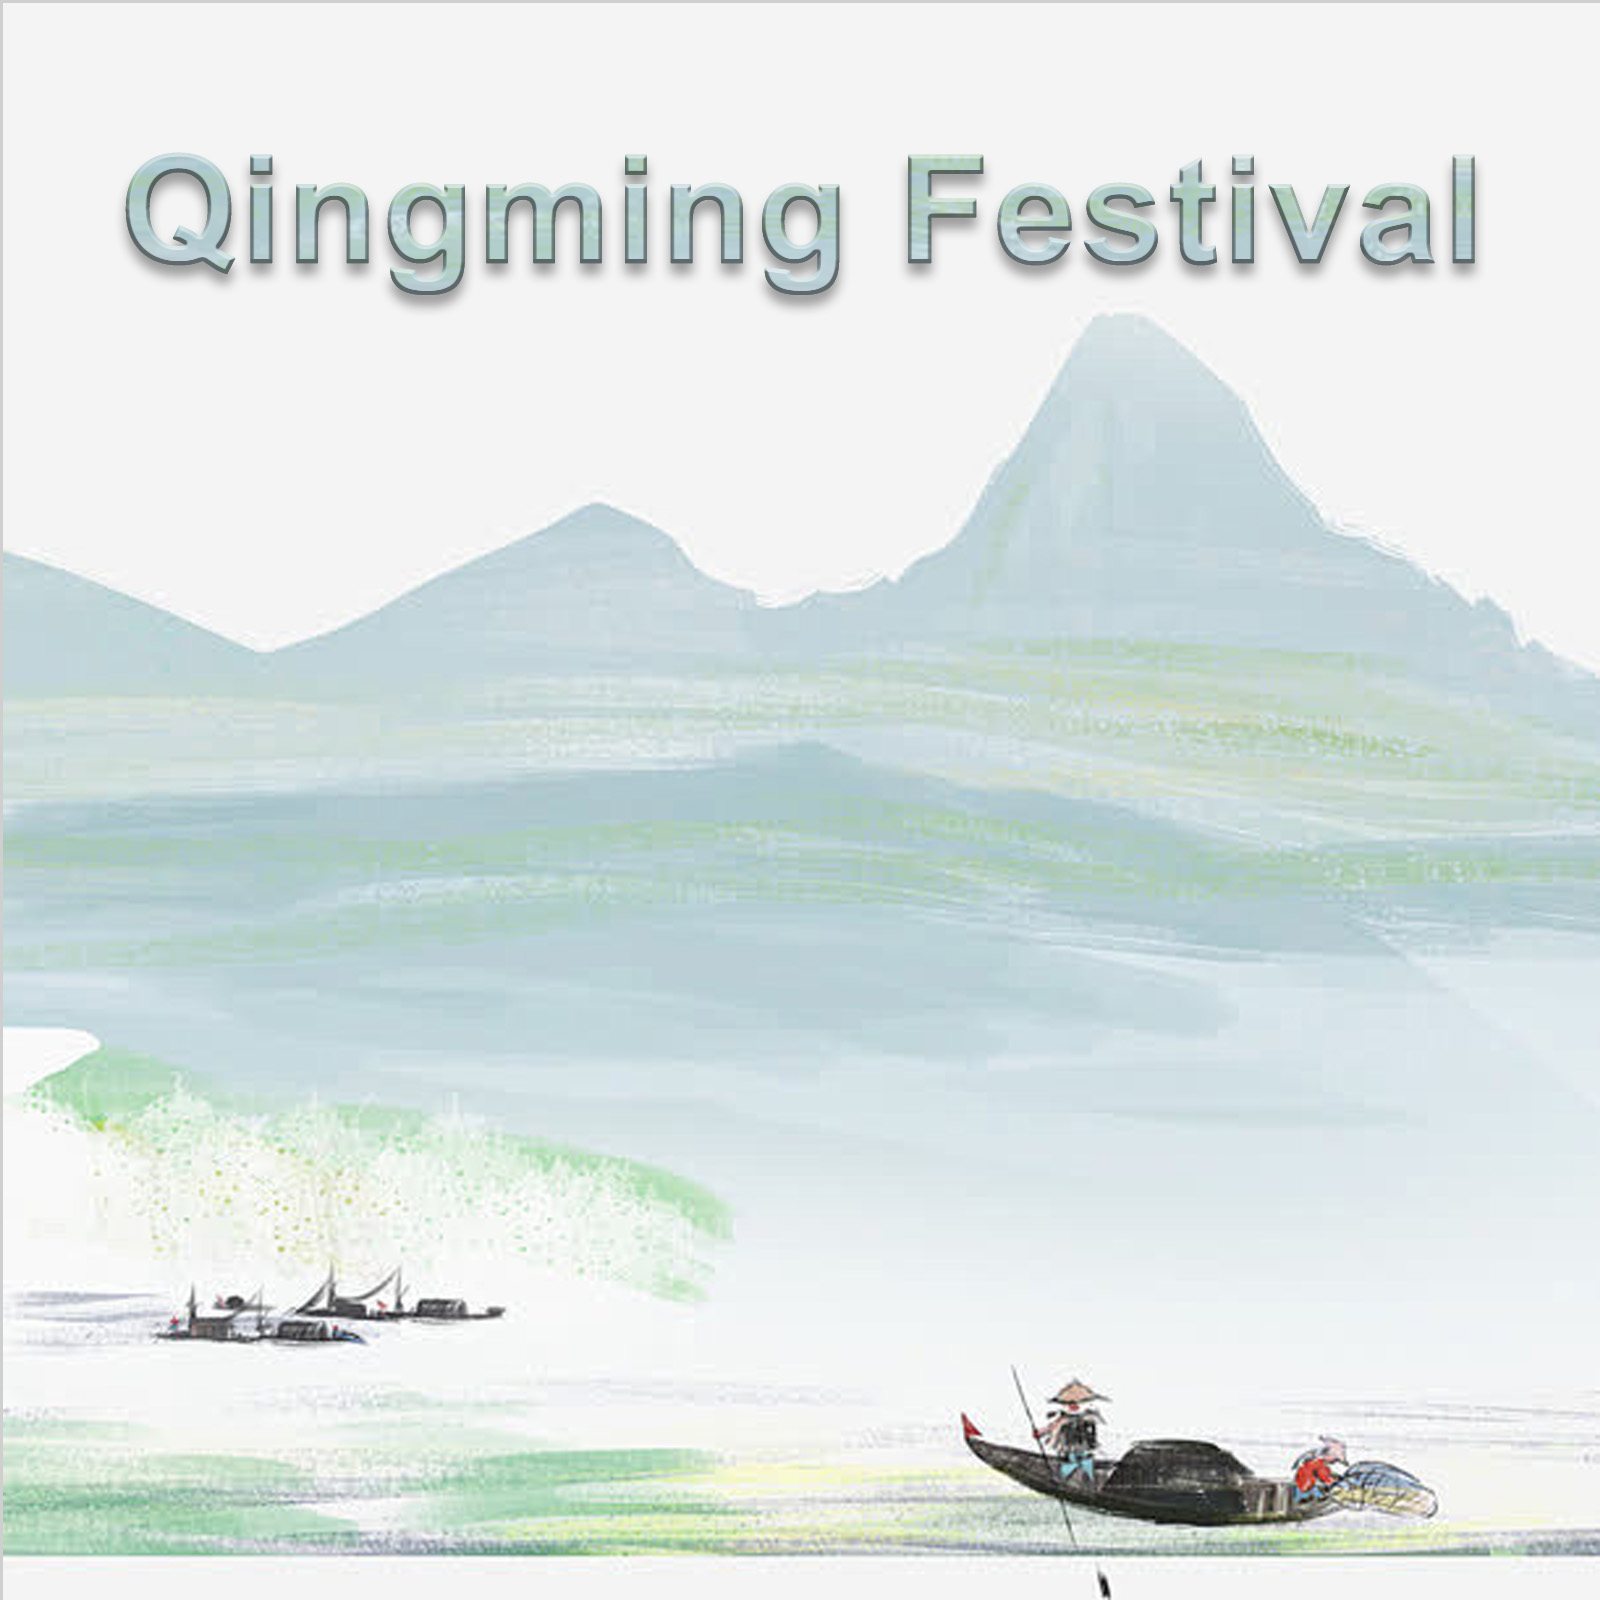 Zawiadomienie o festiwalu CNLonQcom w Qingming